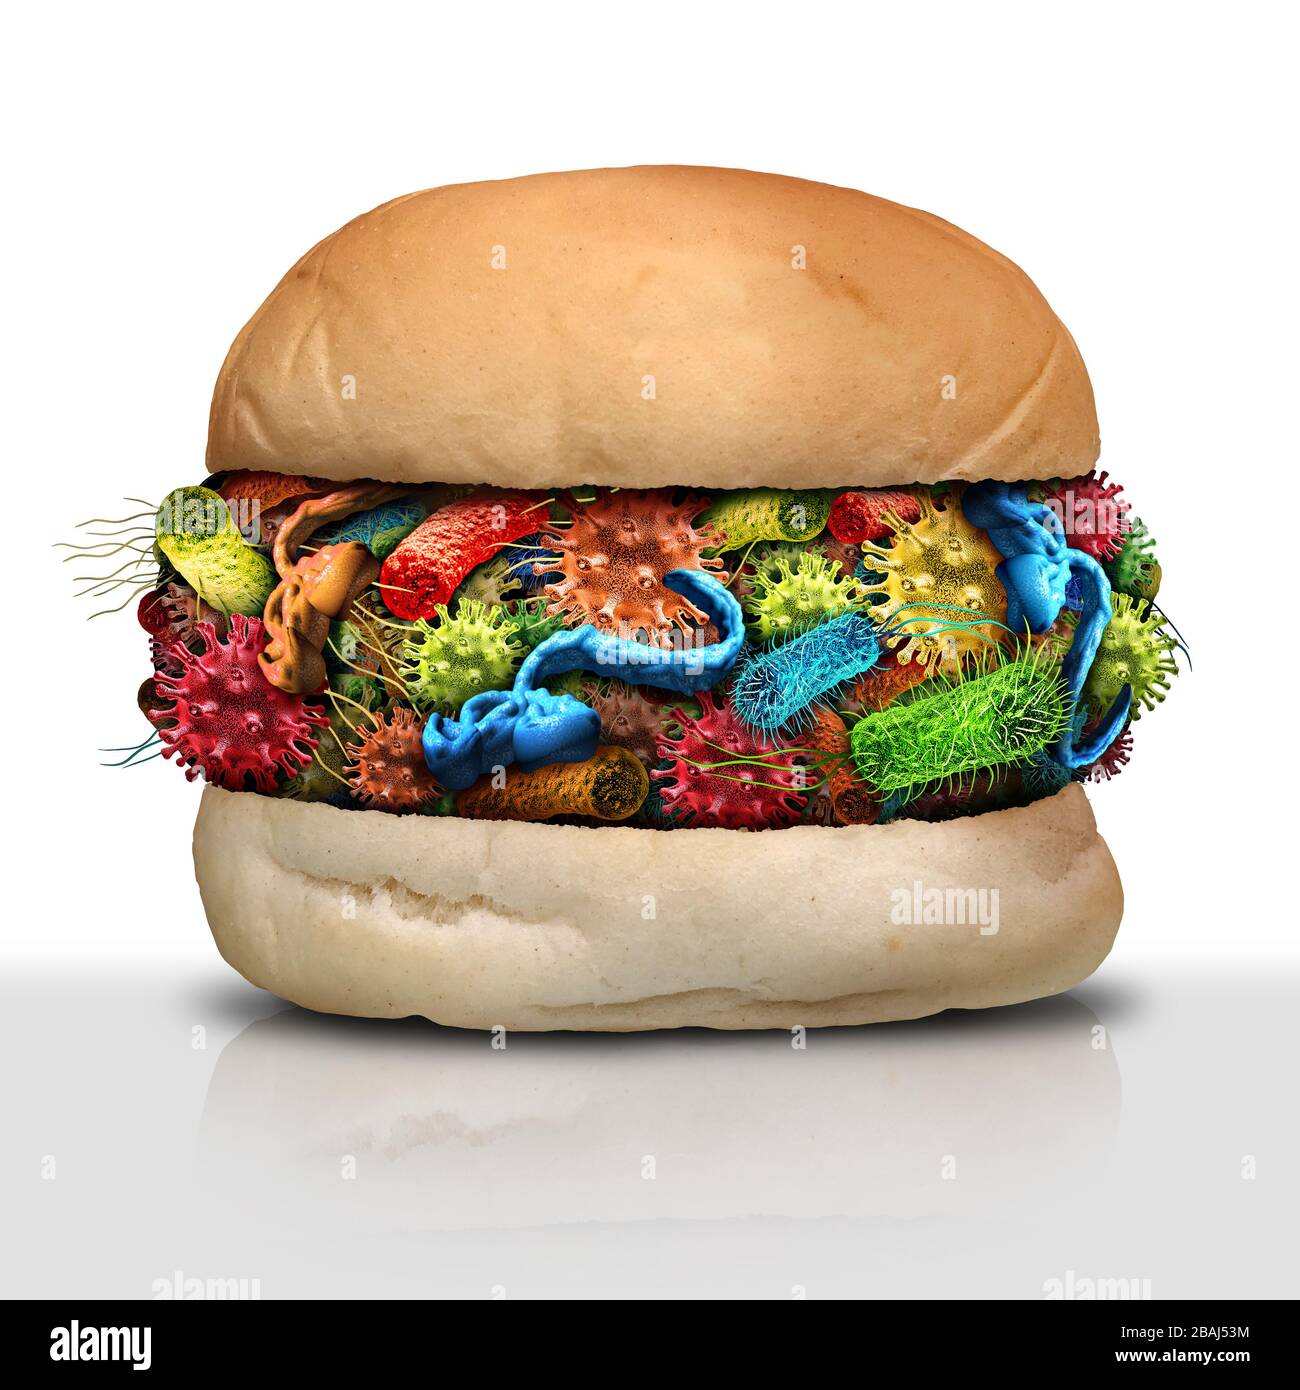 Malattia in alimenti come batteri e germi su un hamburger cattivo e il rischio per la salute di ingerire e mangiare carne contaminata come sicurezza alimentare. Foto Stock